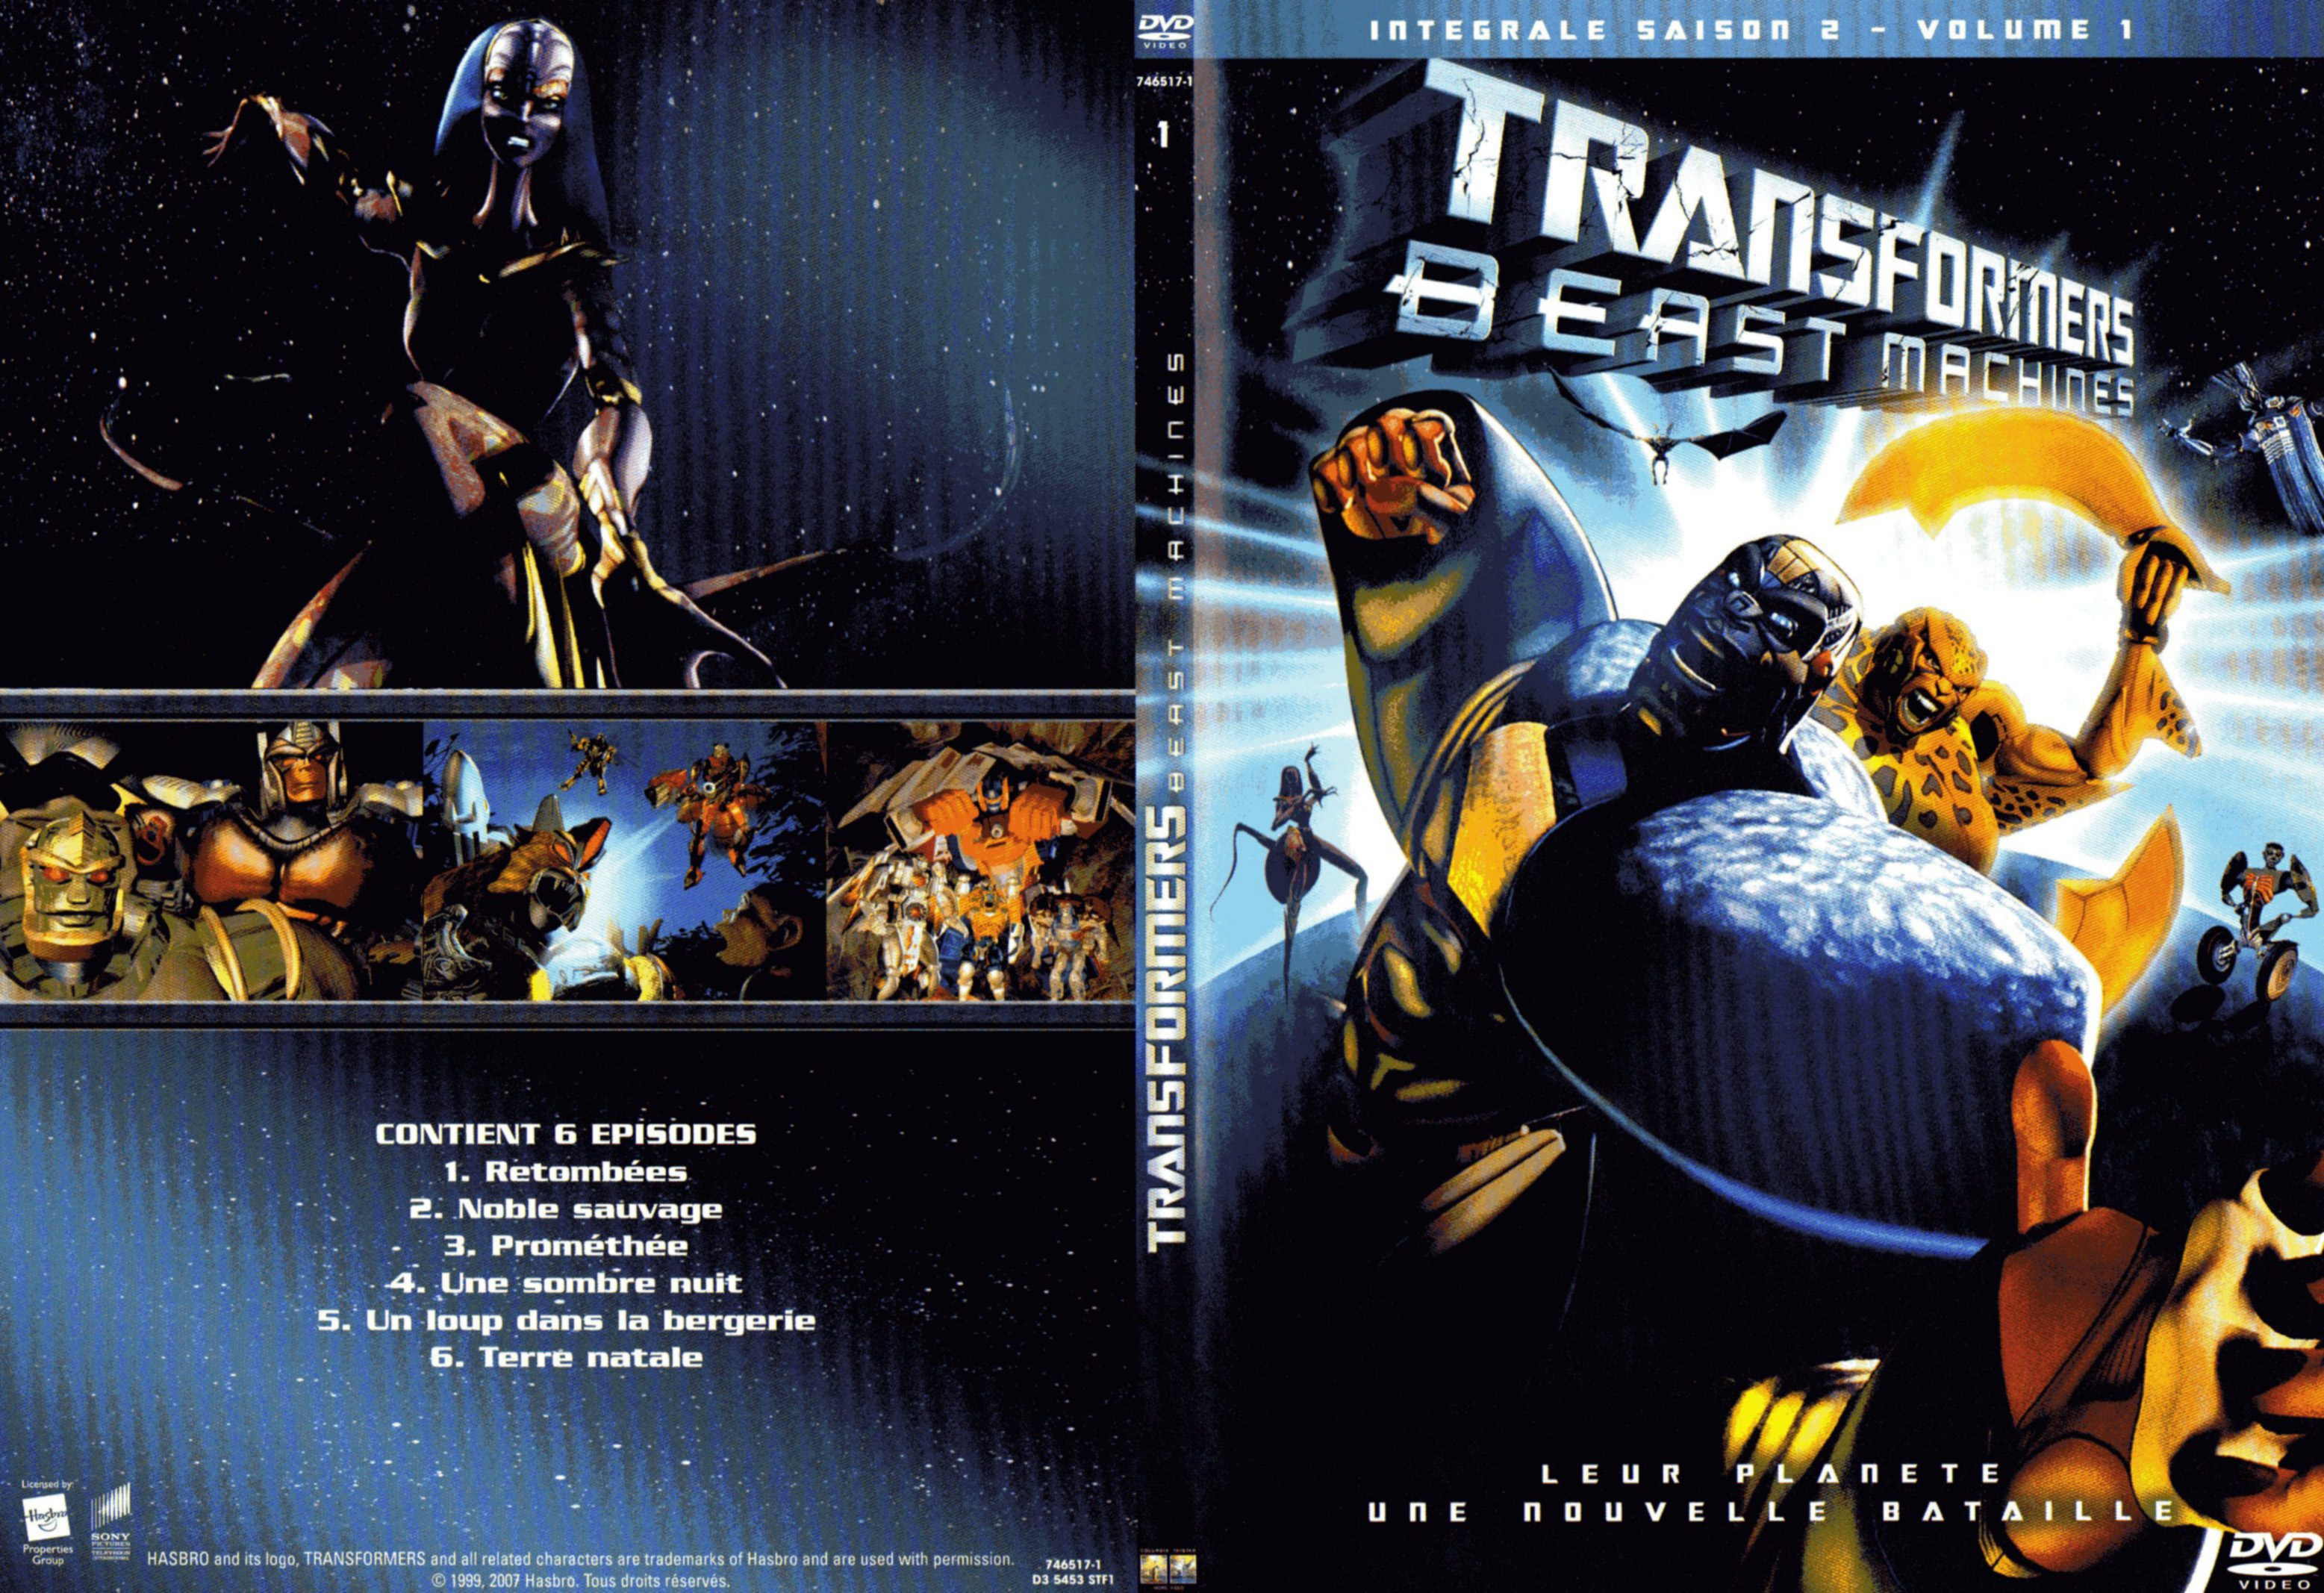 Jaquette DVD Transformers beast machine Saison 2 DVD 1